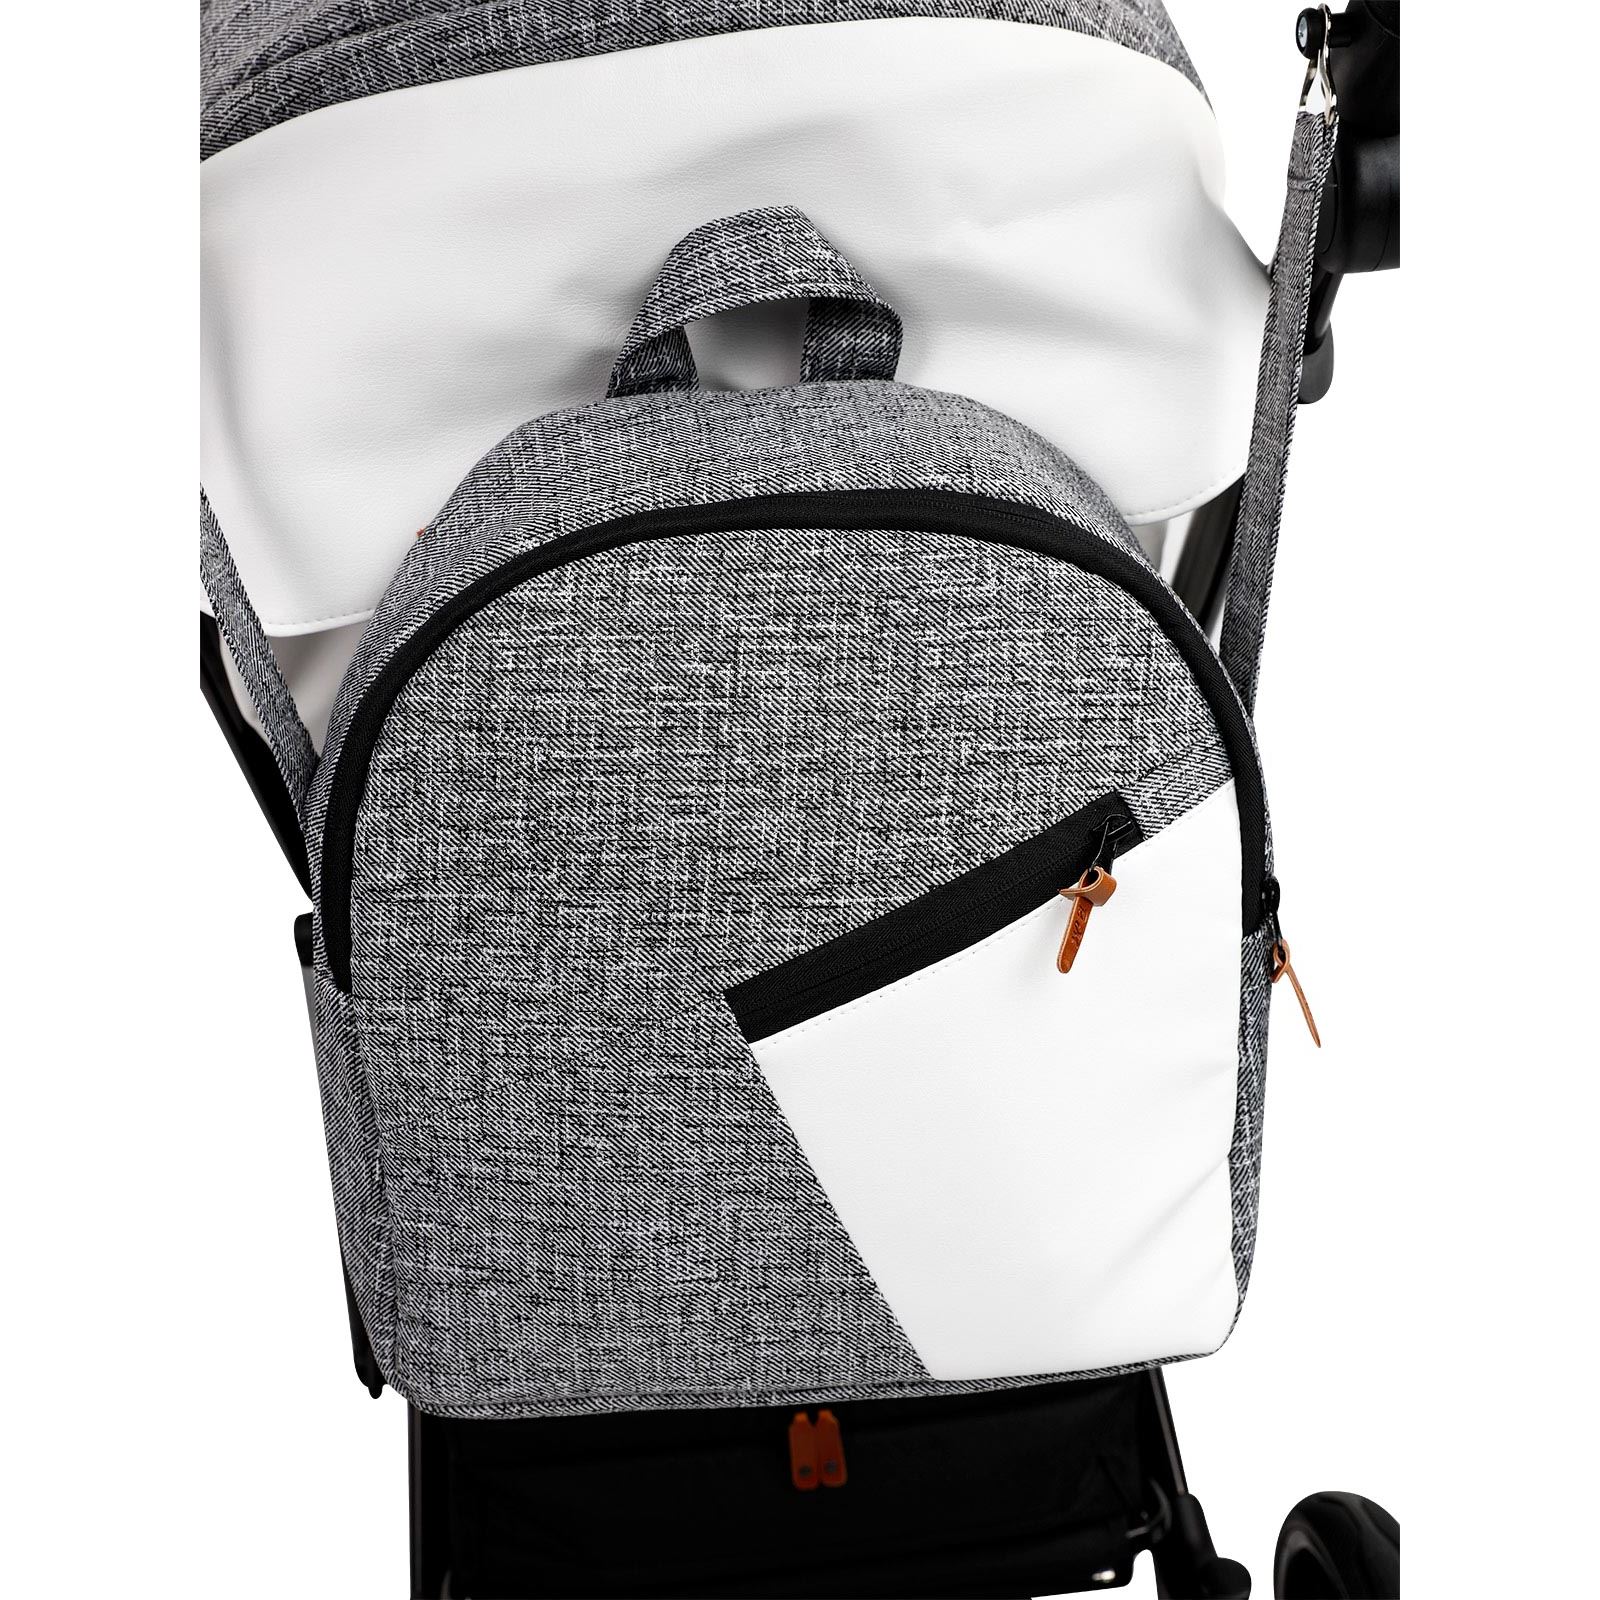 Baby Merc Travel Sistem Bebek Arabası Mosca Dark Grey Çanta Hediyeli!